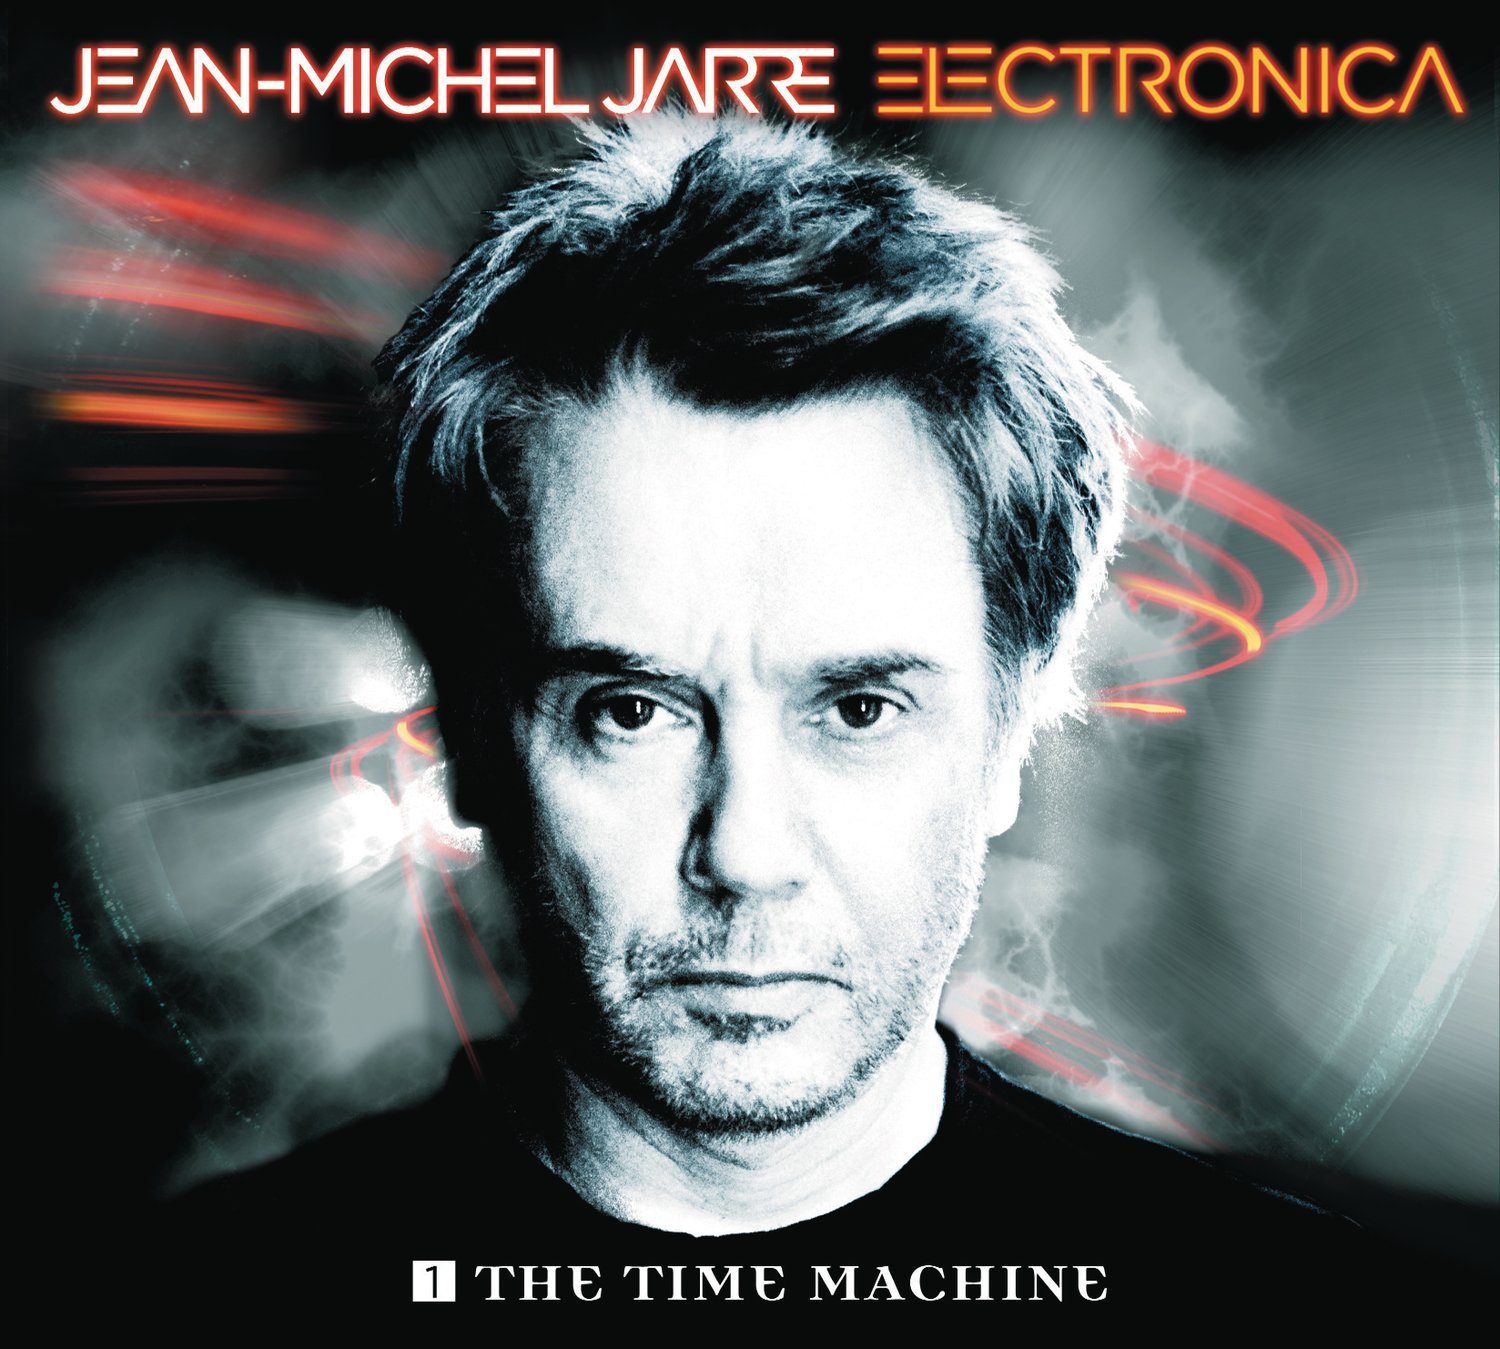 Electronica 1 The Tome Machine, musique électronique de Jean Michel Jarre, 2015